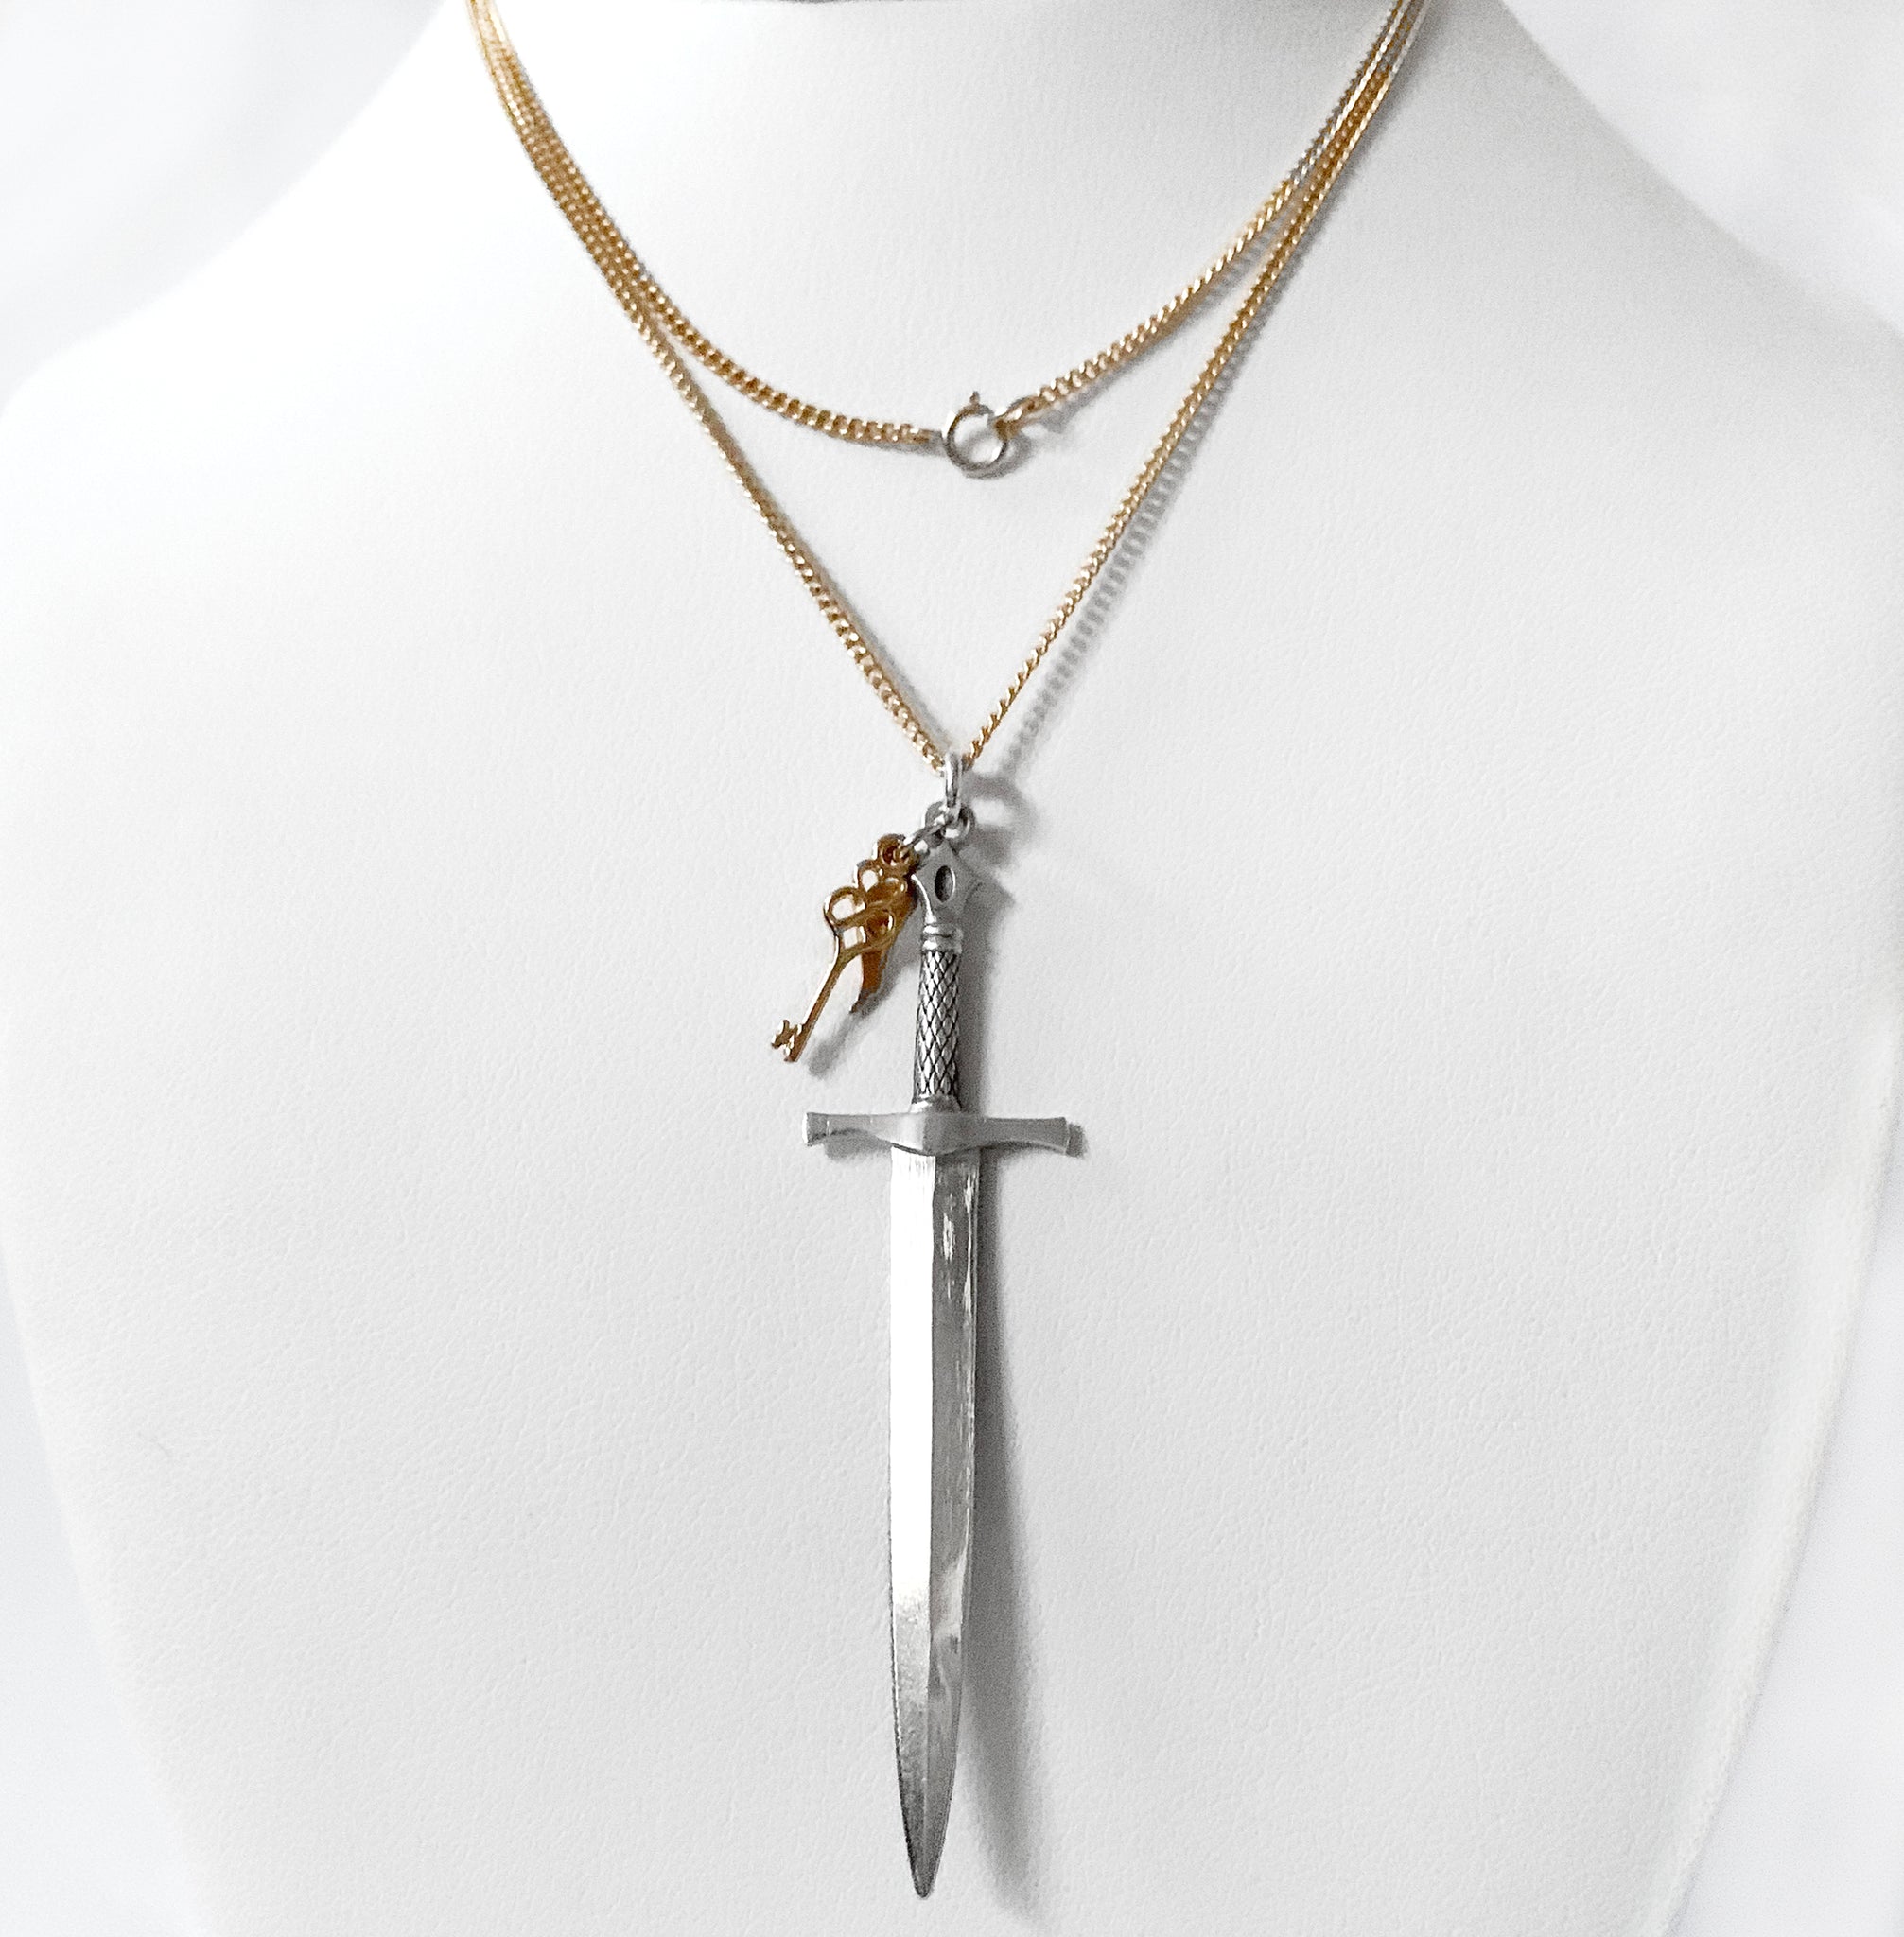 Joan of Arc's Sword of Courage